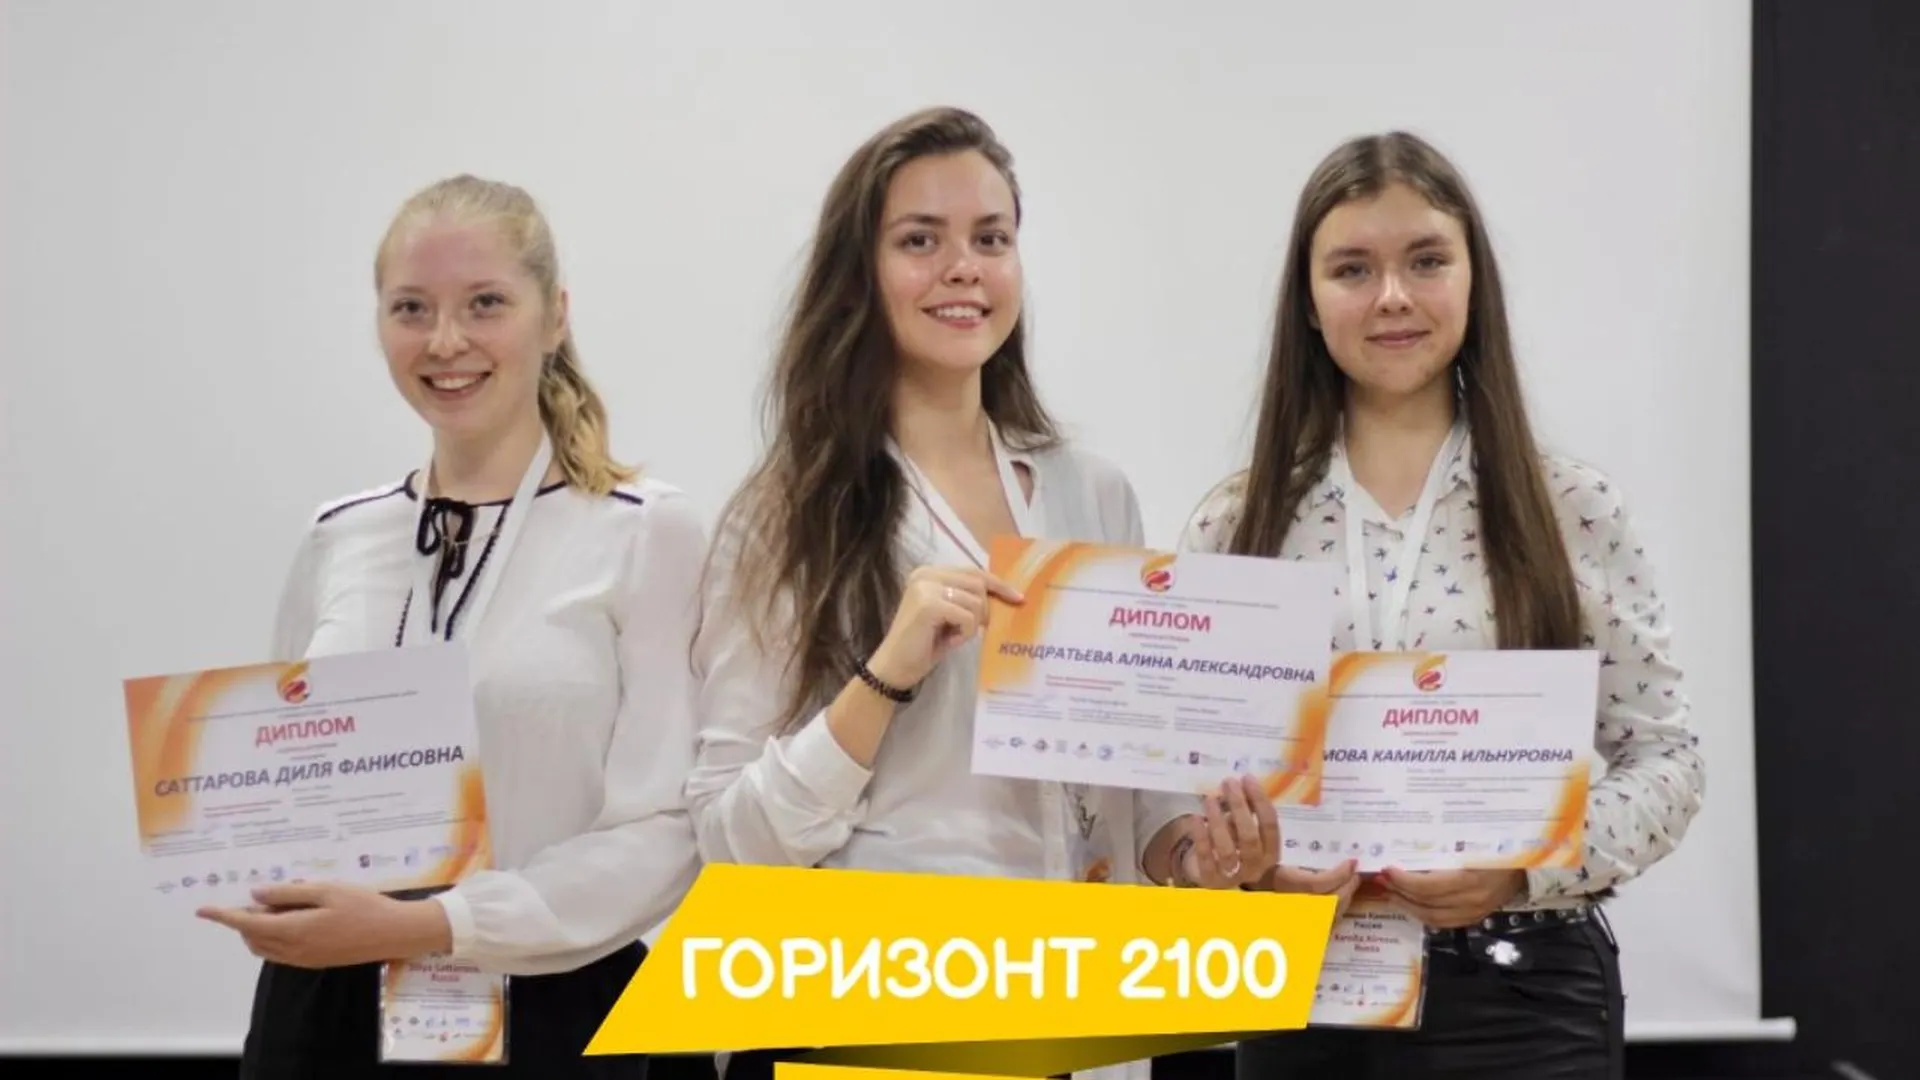 Жители Подмосковья могут принять участие в конкурсе научно-фантастических работ «Горизонт 2100»